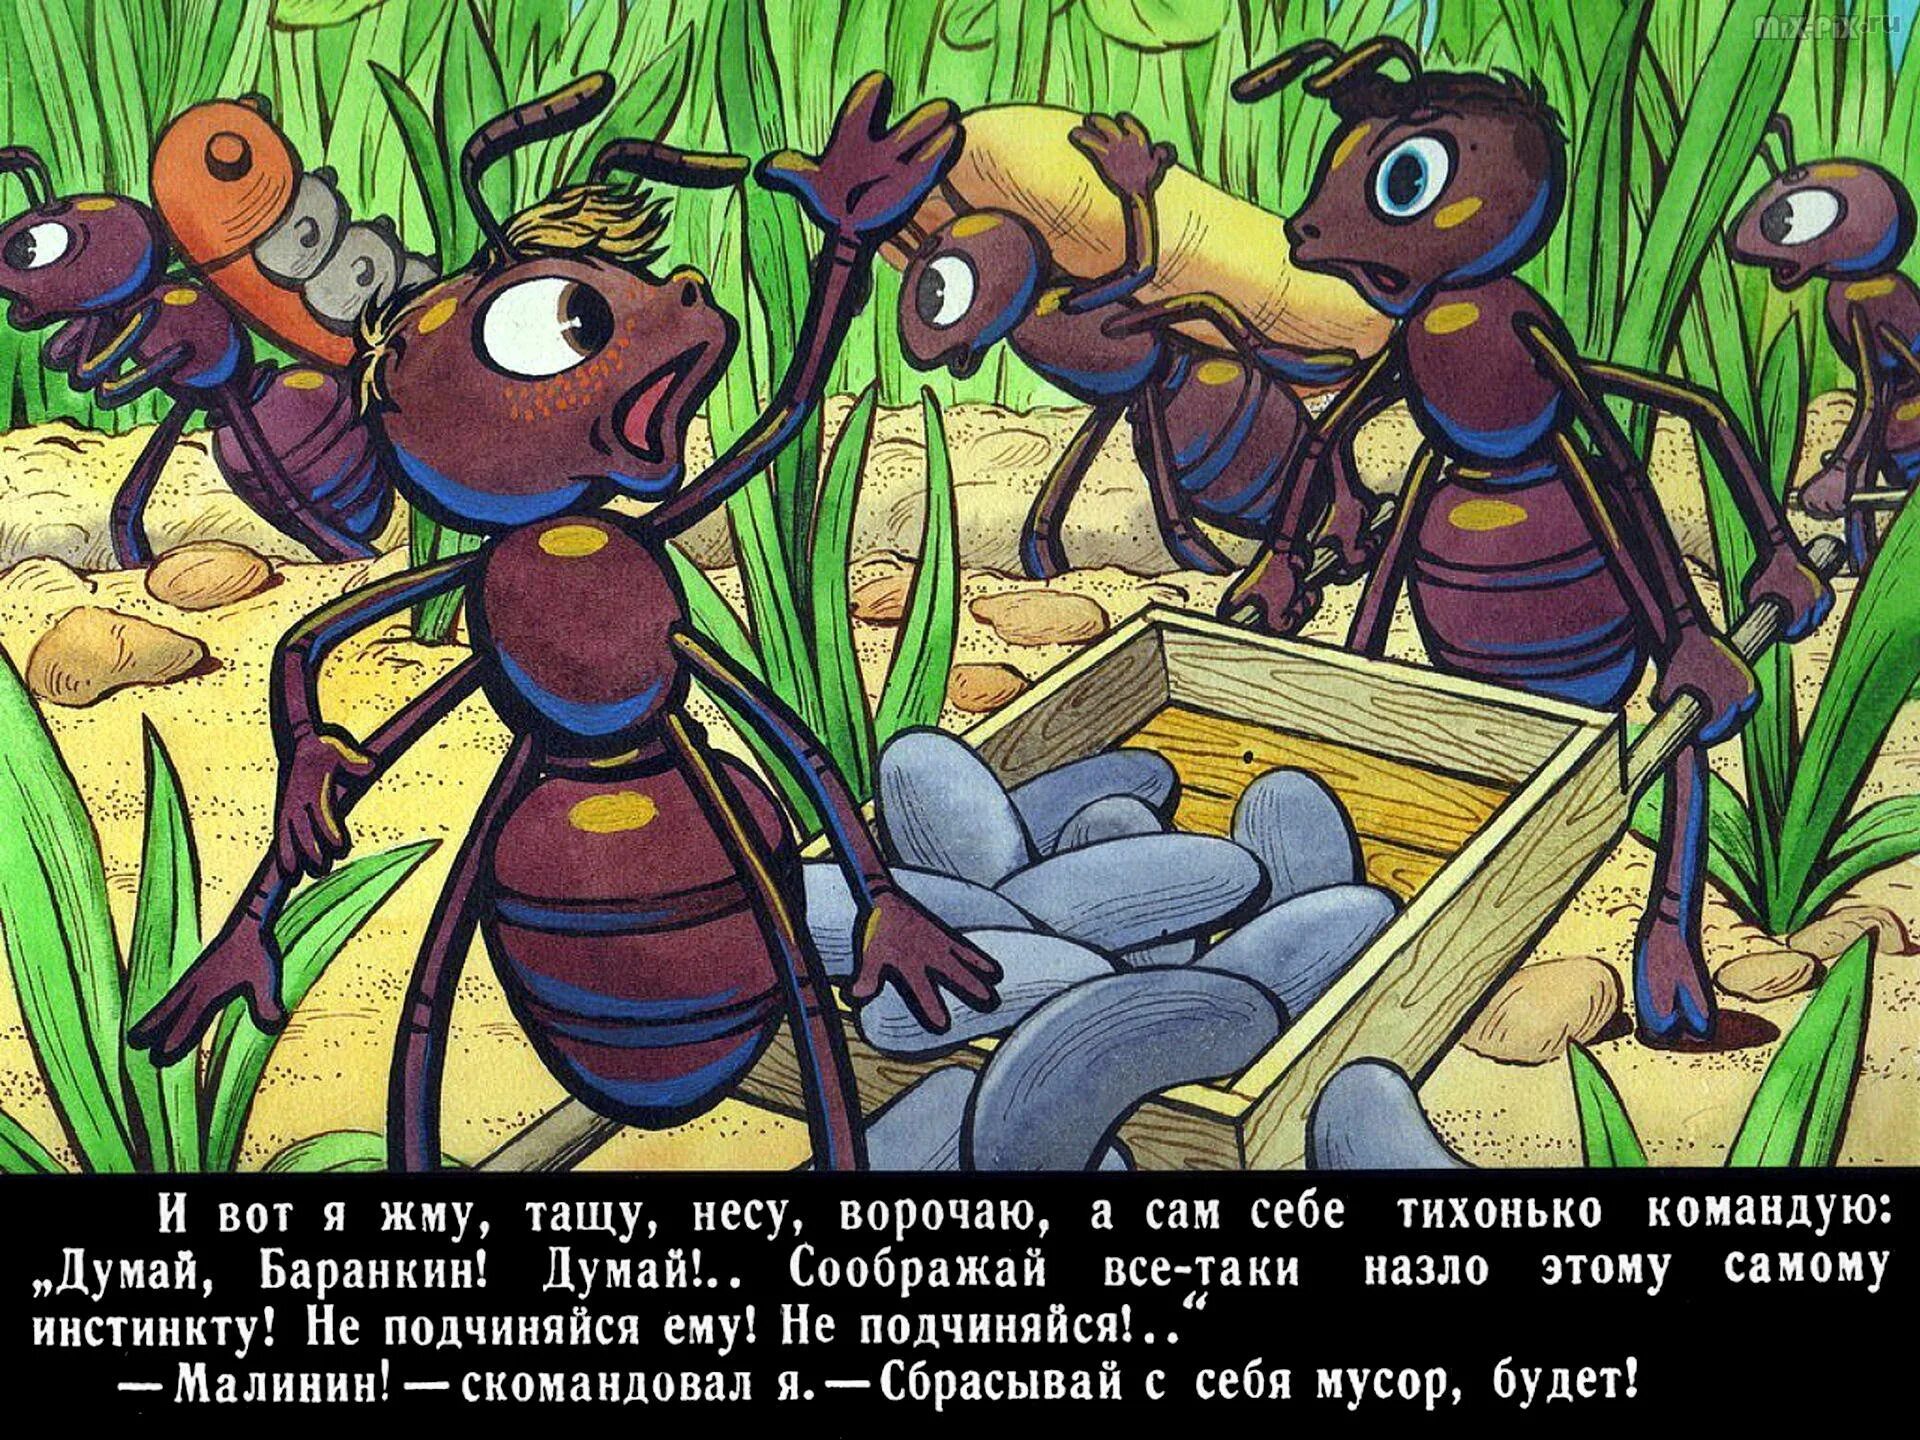 Повесть будь человеком. Баранкин муравей. Баранкин будь человеком иллюстрации Баранкин муравей. Баранкин будь человеком мультфильм. Баранкин будь человеком муравьи.